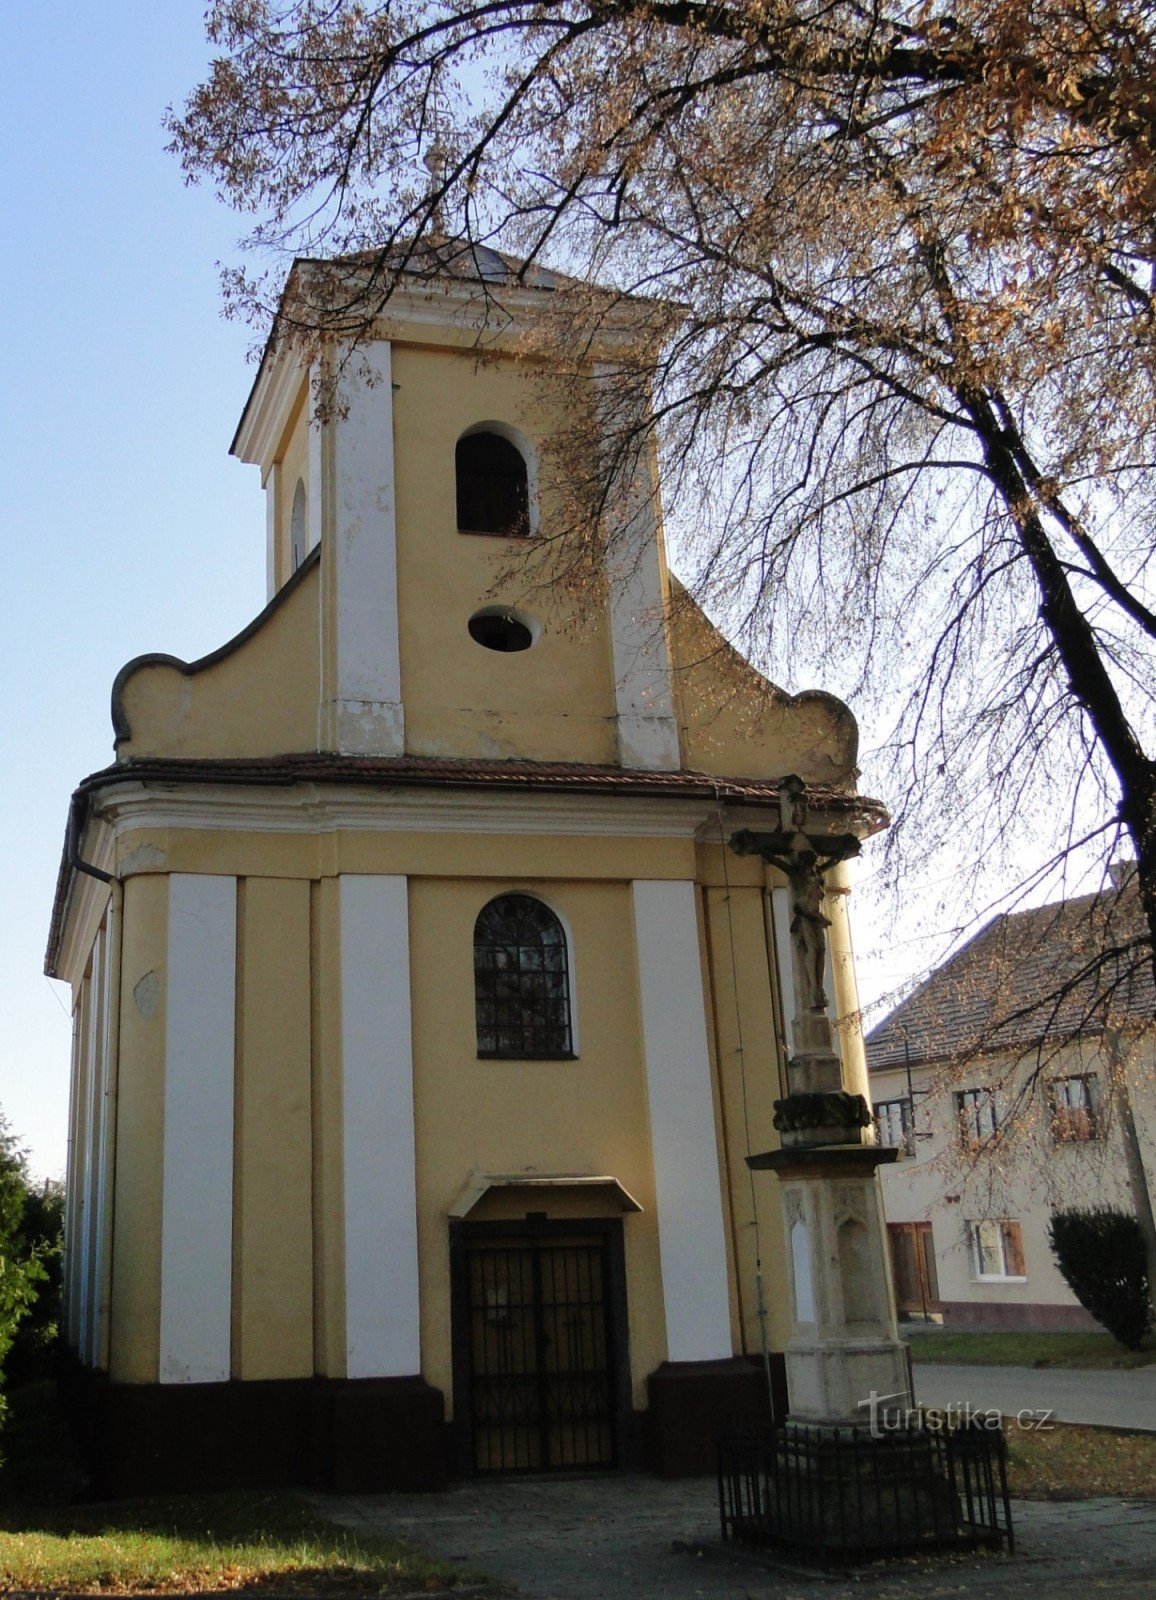 kapel i landsbyen Dětkovice